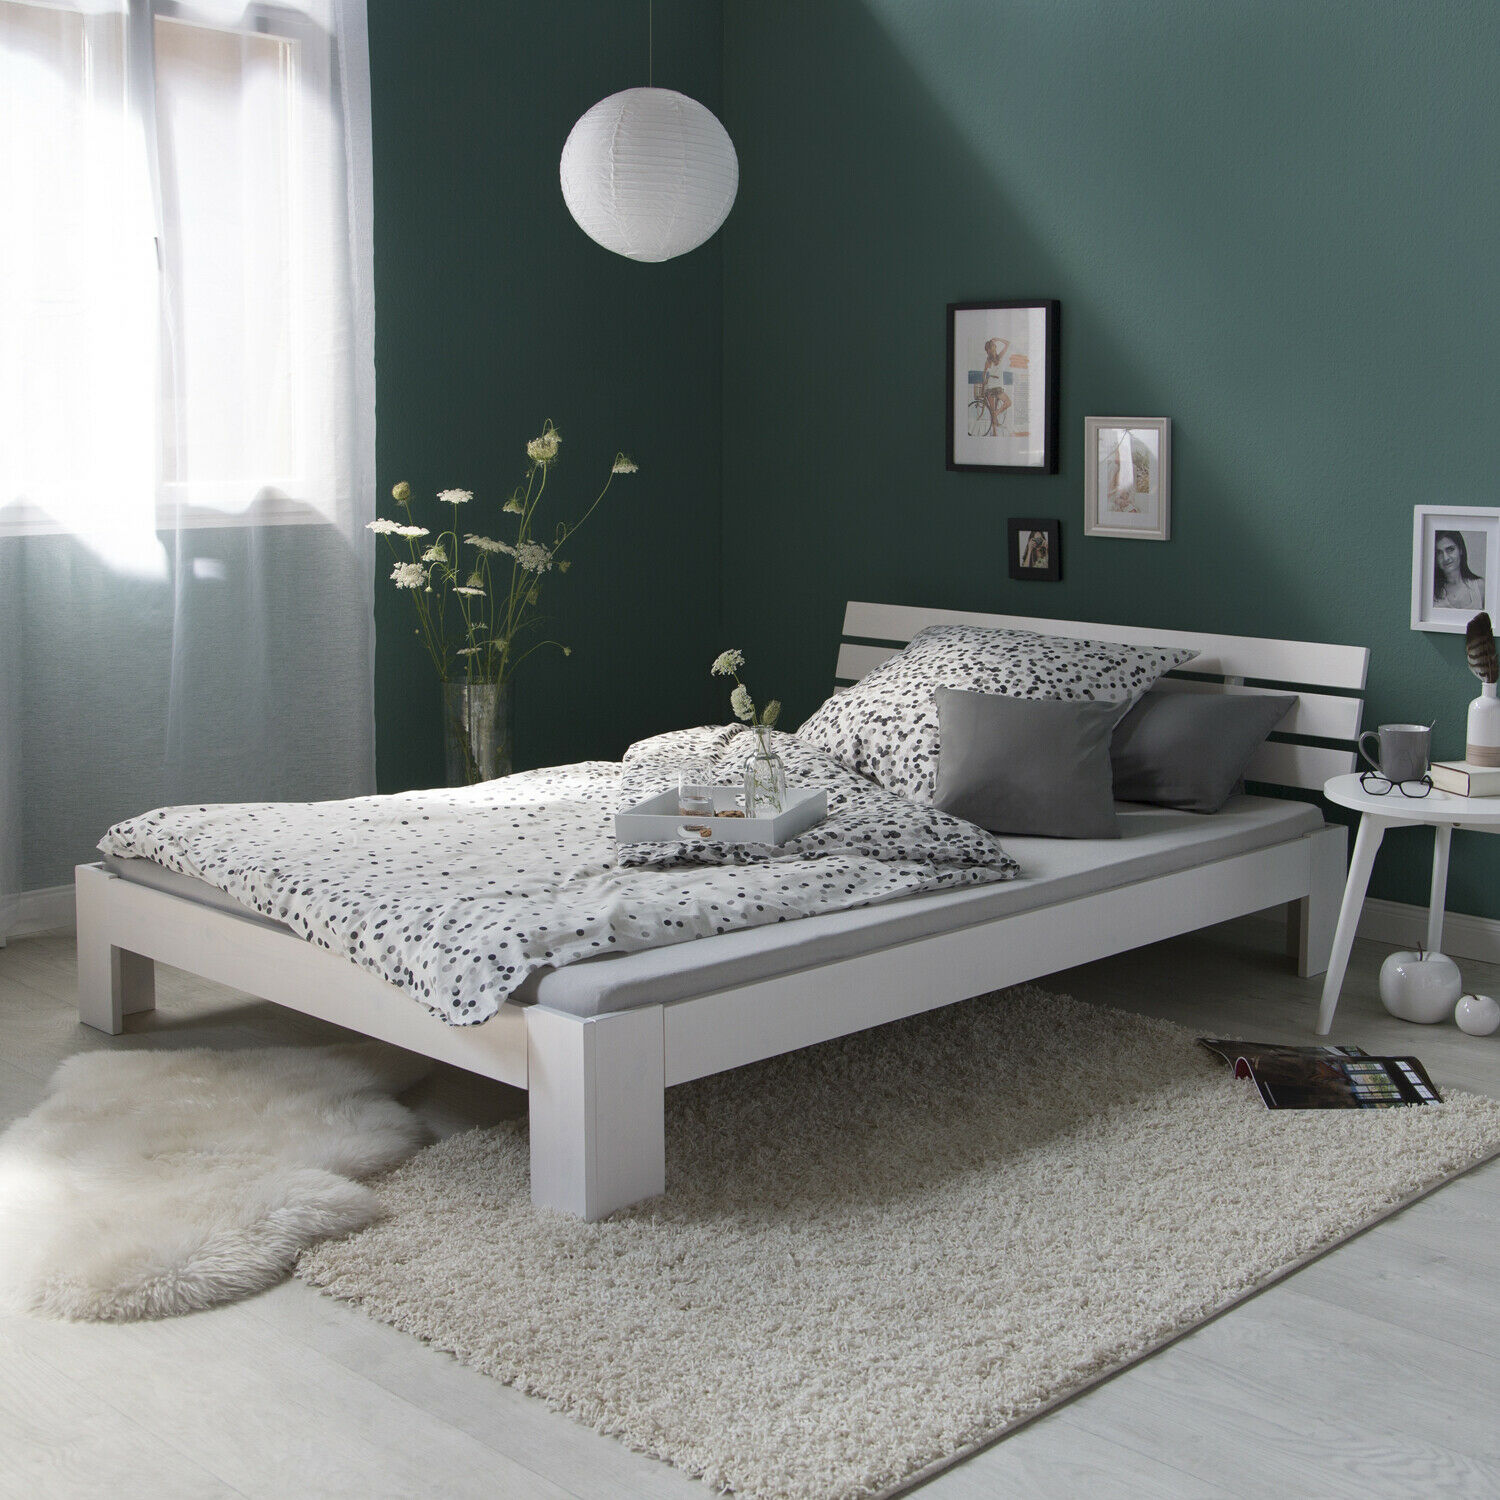 Lit double en bois massif 160x200cm blanc pin lit futon à lattes cadre de lit